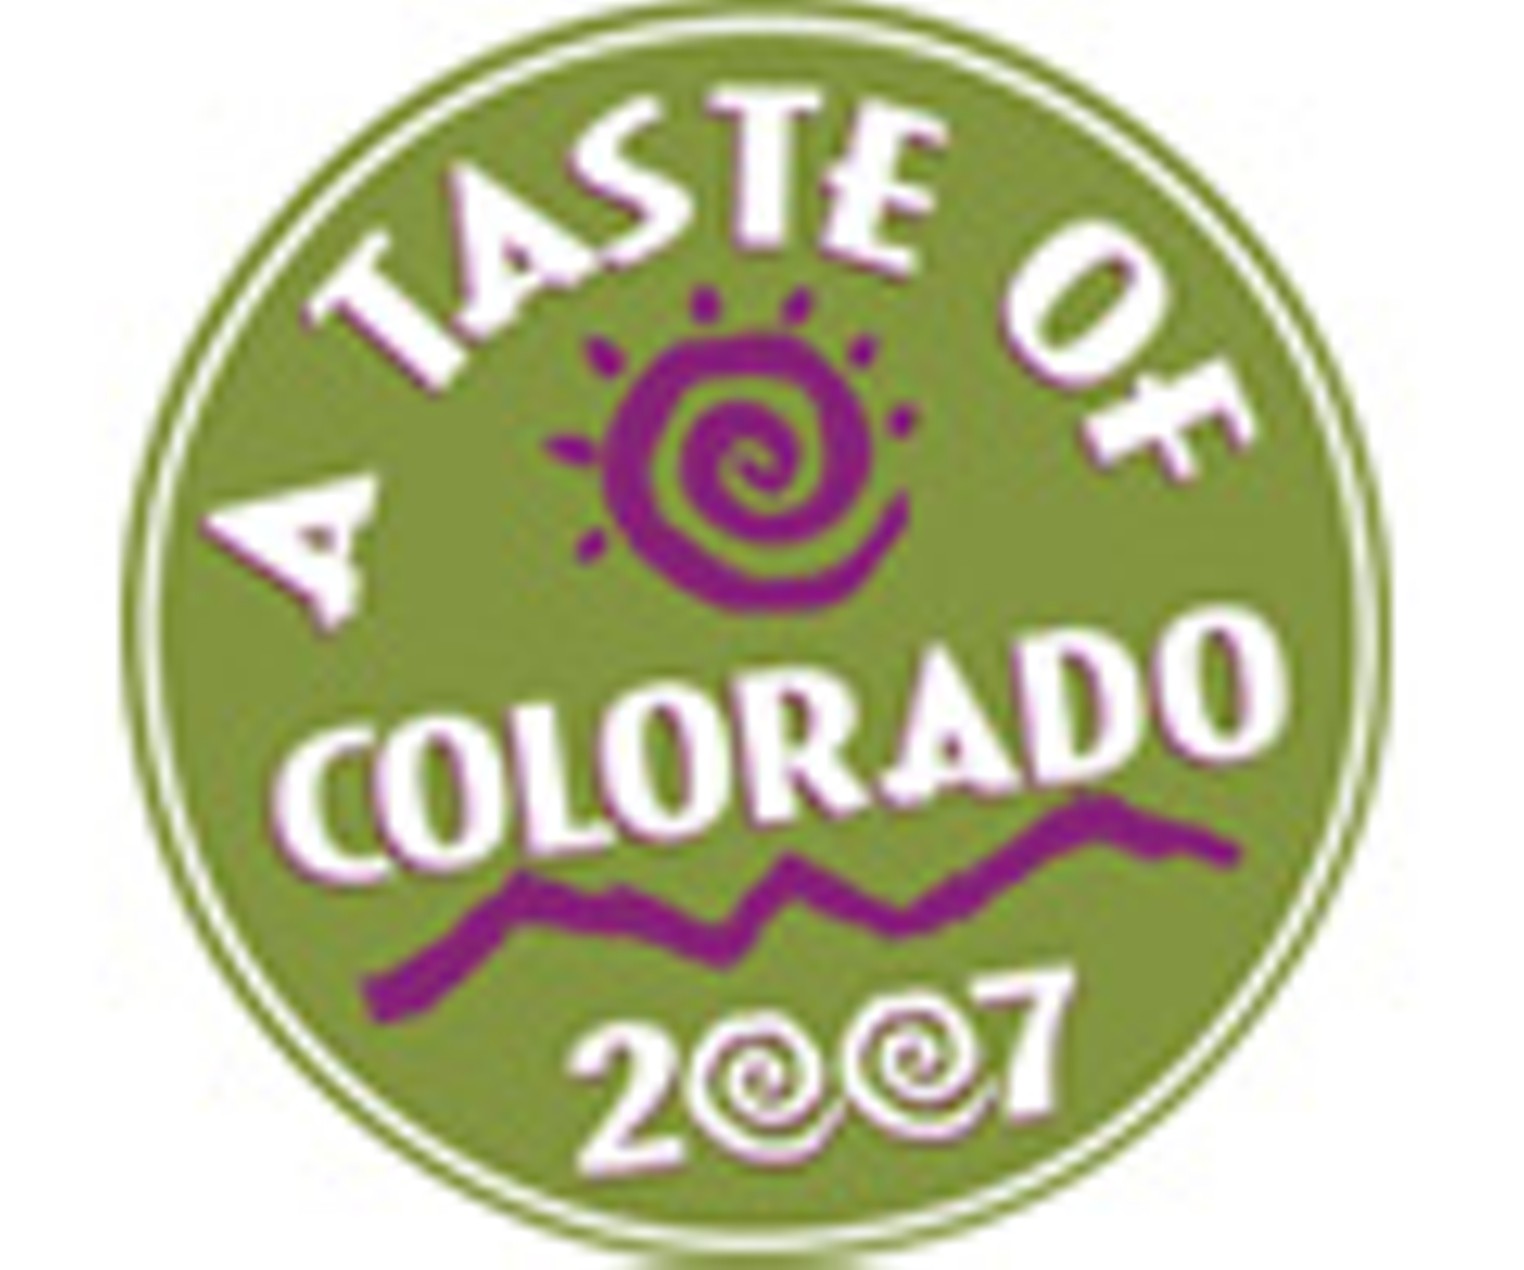 Taste of Colorado Denver Denver Westword The Leading Independent